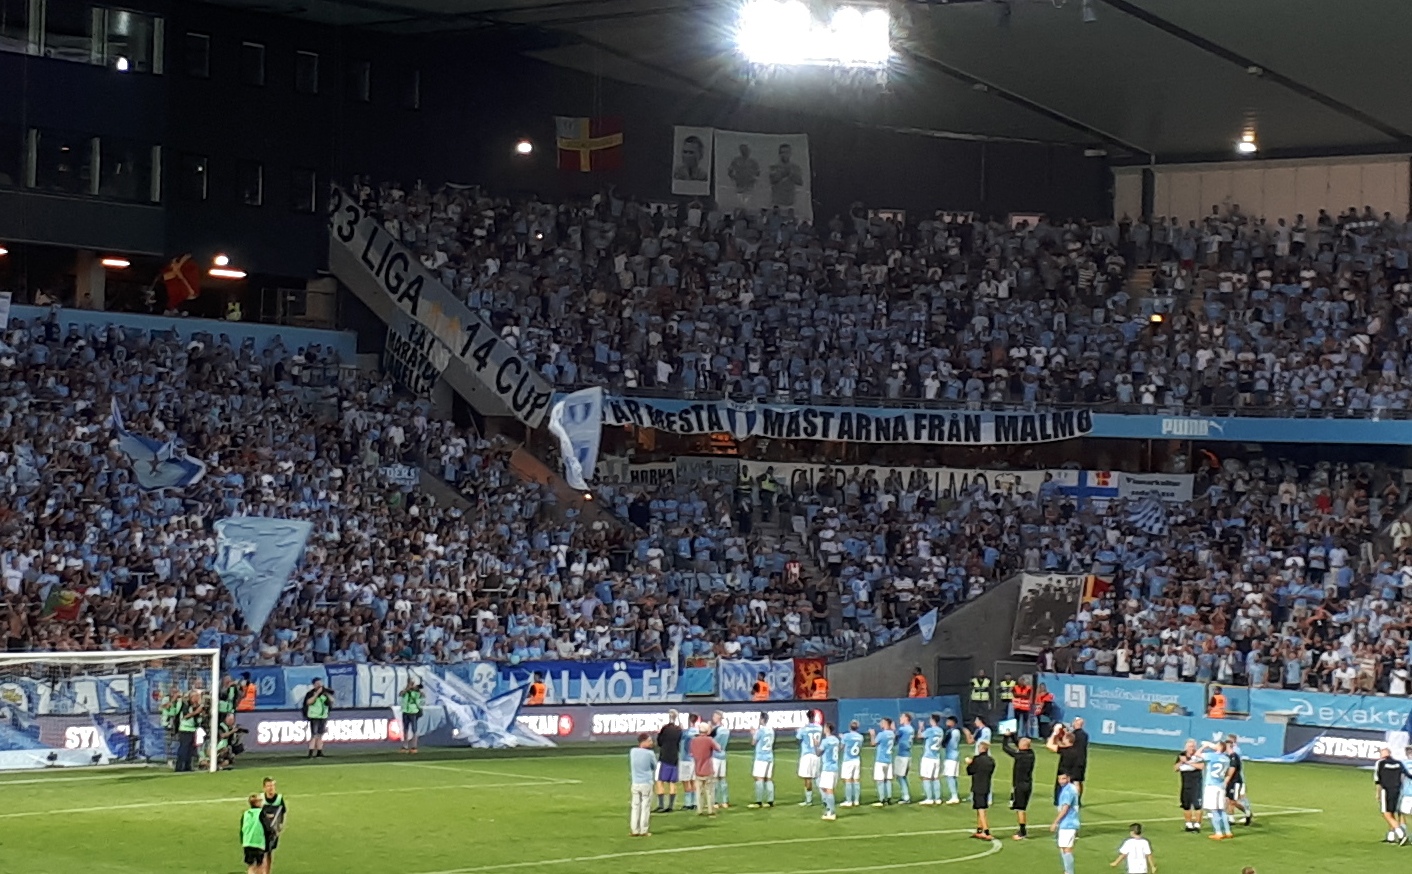 Mint a felvezetőben említettük, látogatásunk apropója a Malmö FF–Kolozsvári CFR Bajnokok Ligája mérkőzés volt. A svédek rendkívül büszkék csapatukra, amely az ország legsikeresebb egyesülete. Megsúgjuk (ha valaki arra járna olvasóink közül), hogy a Malmö Stadion wifijelszavába is beleépítették 23 bajnoki címüket és 14 svéd kupagyőzelmüket. 